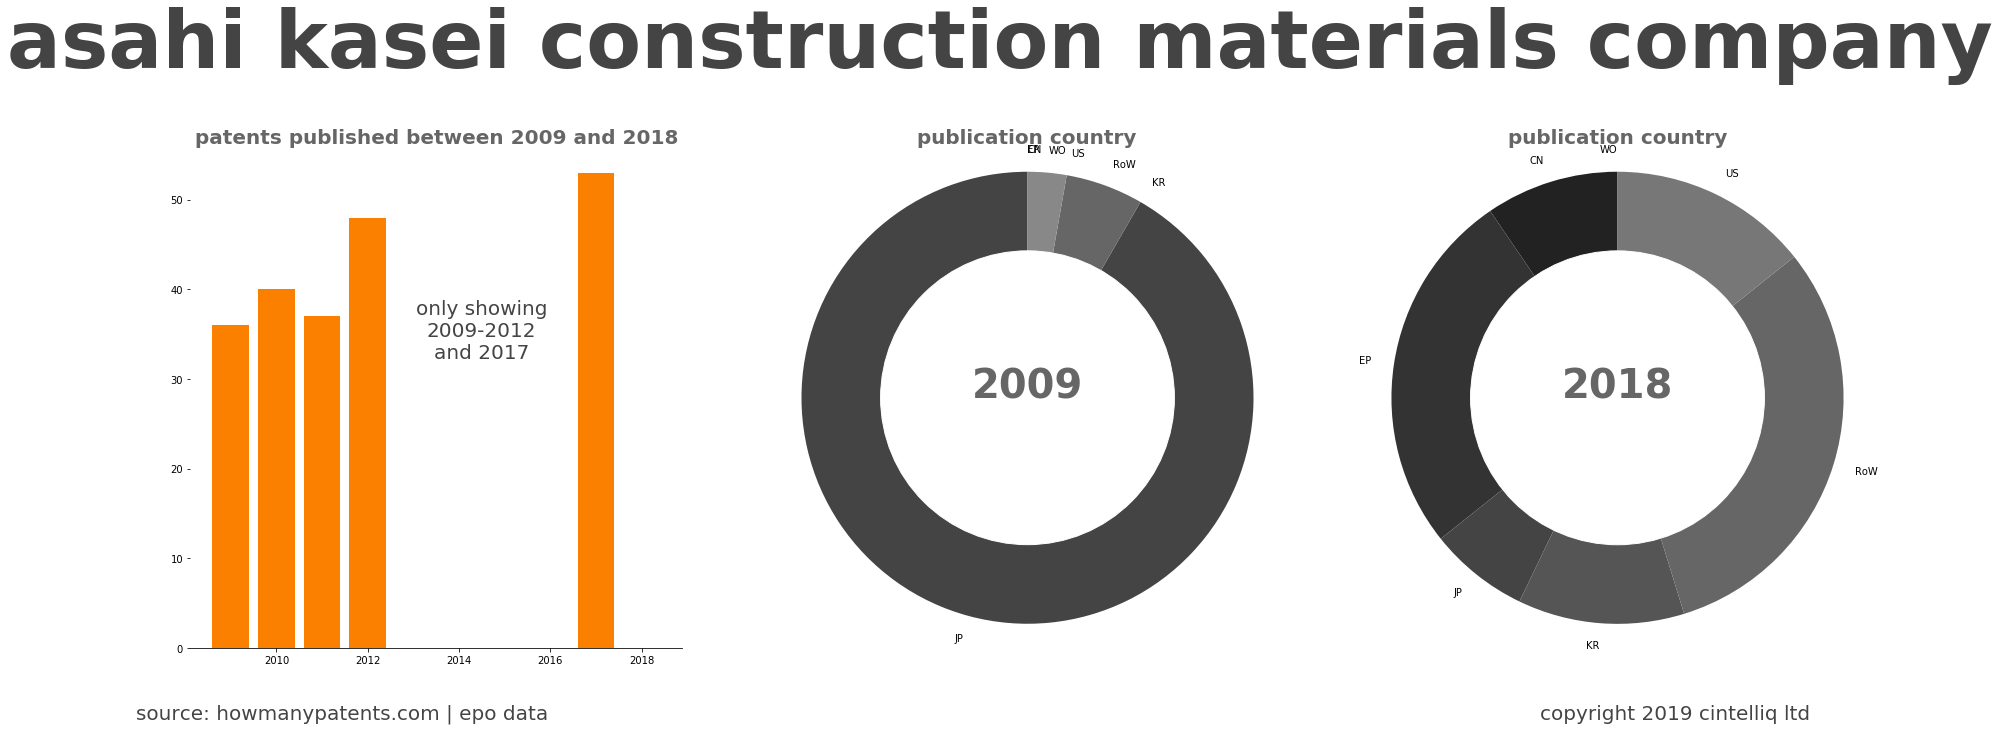 summary of patents for Asahi Kasei Construction Materials Company